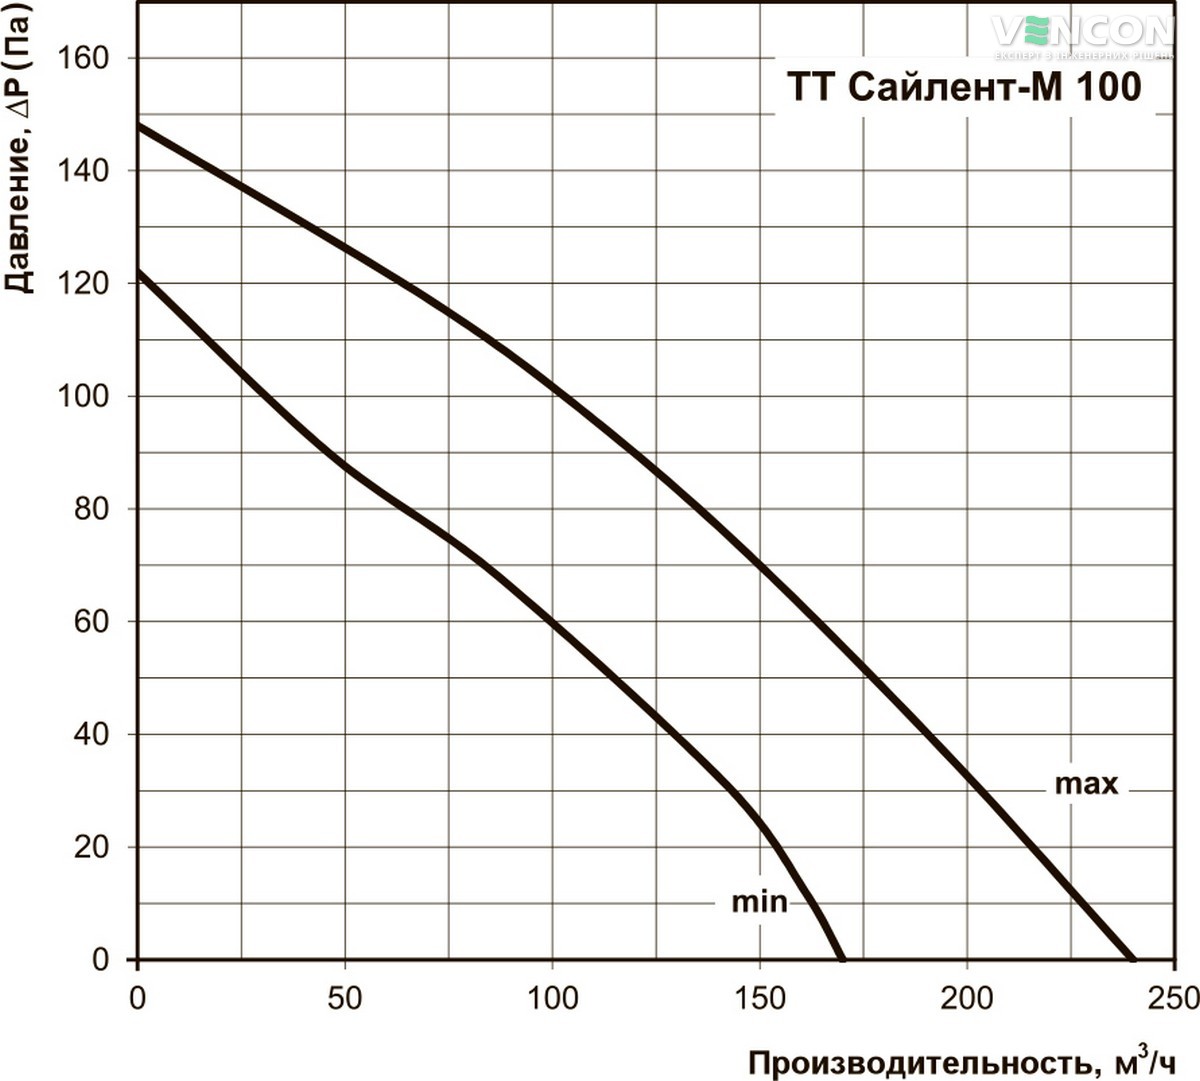 Вентс ТТ Сайлент-М 100 Диаграмма производительности